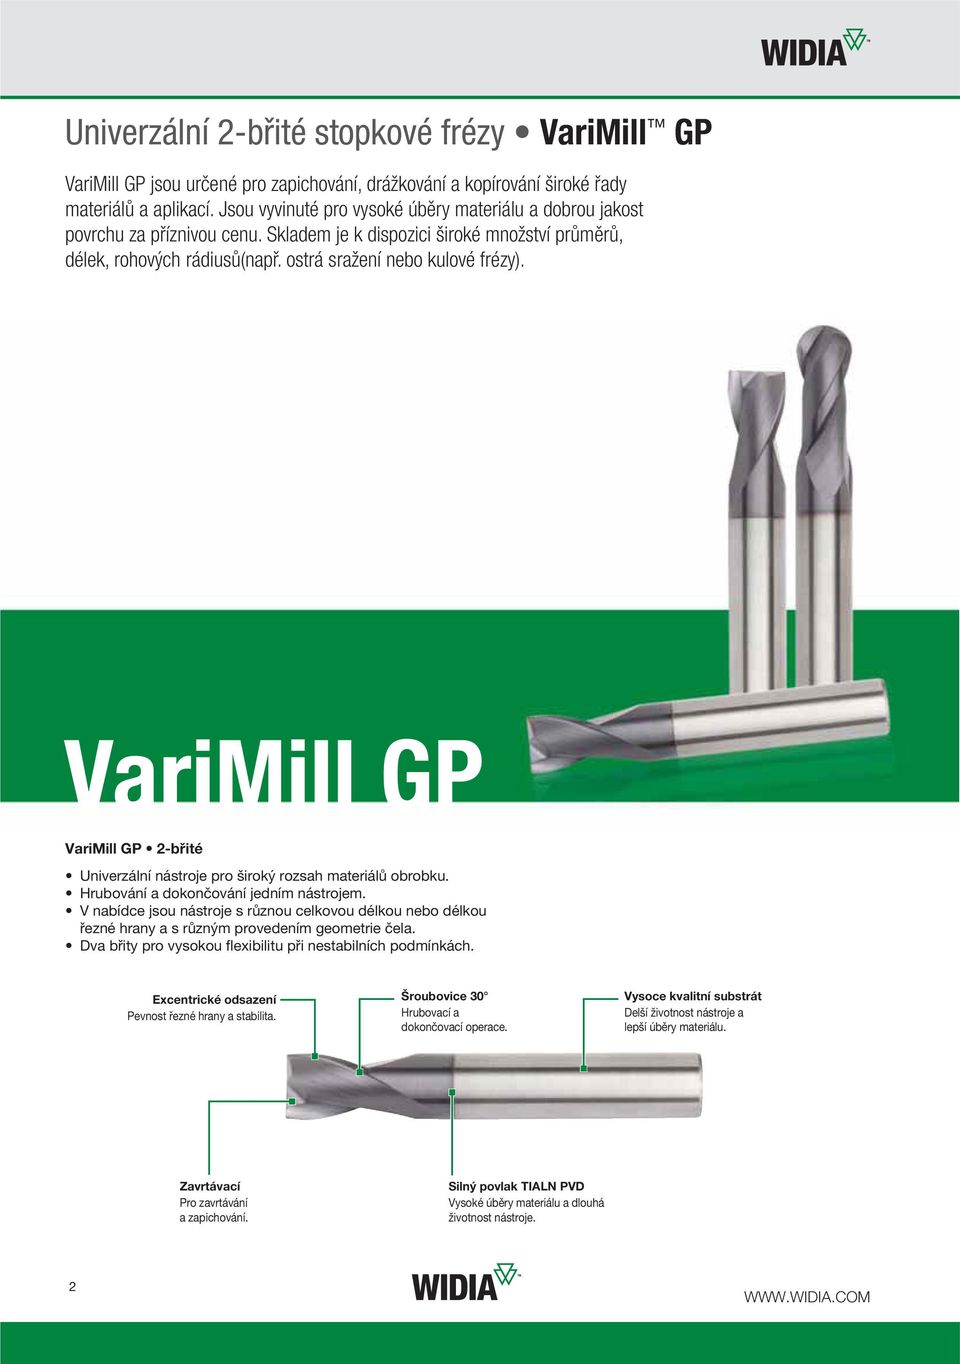 VariMill GP VariMill GP 2-břité Univerzální nástroje pro široký rozsah materiálů obrobku. Hrubování a dokončování jedním nástrojem.